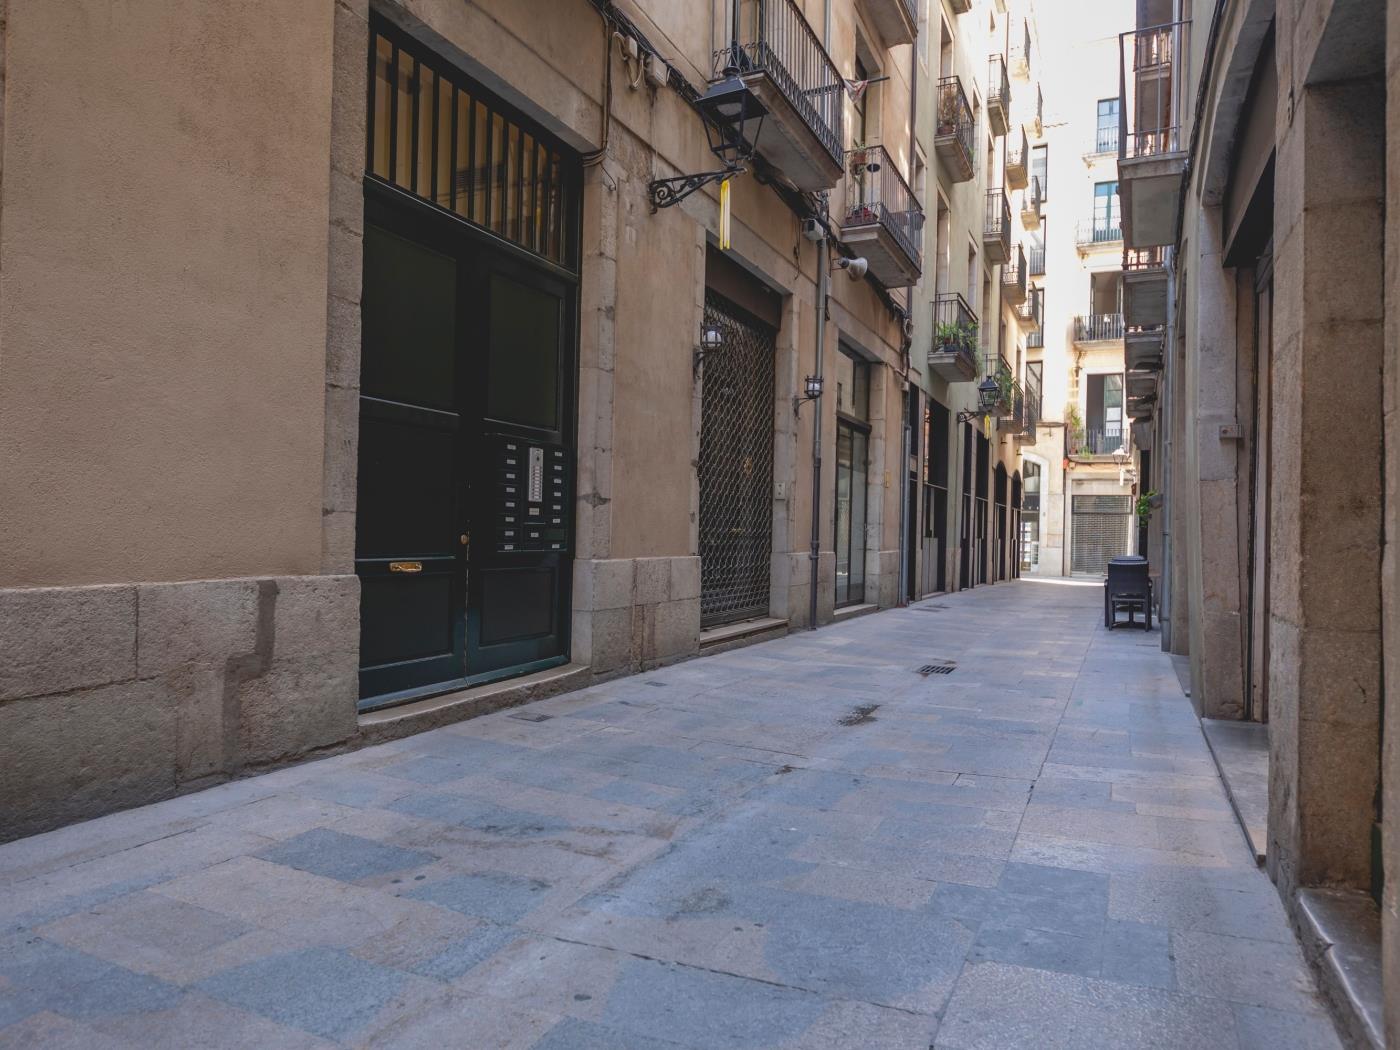 Mercaders 6 - Holiday apartment in Girona | Bravissimo in Girona